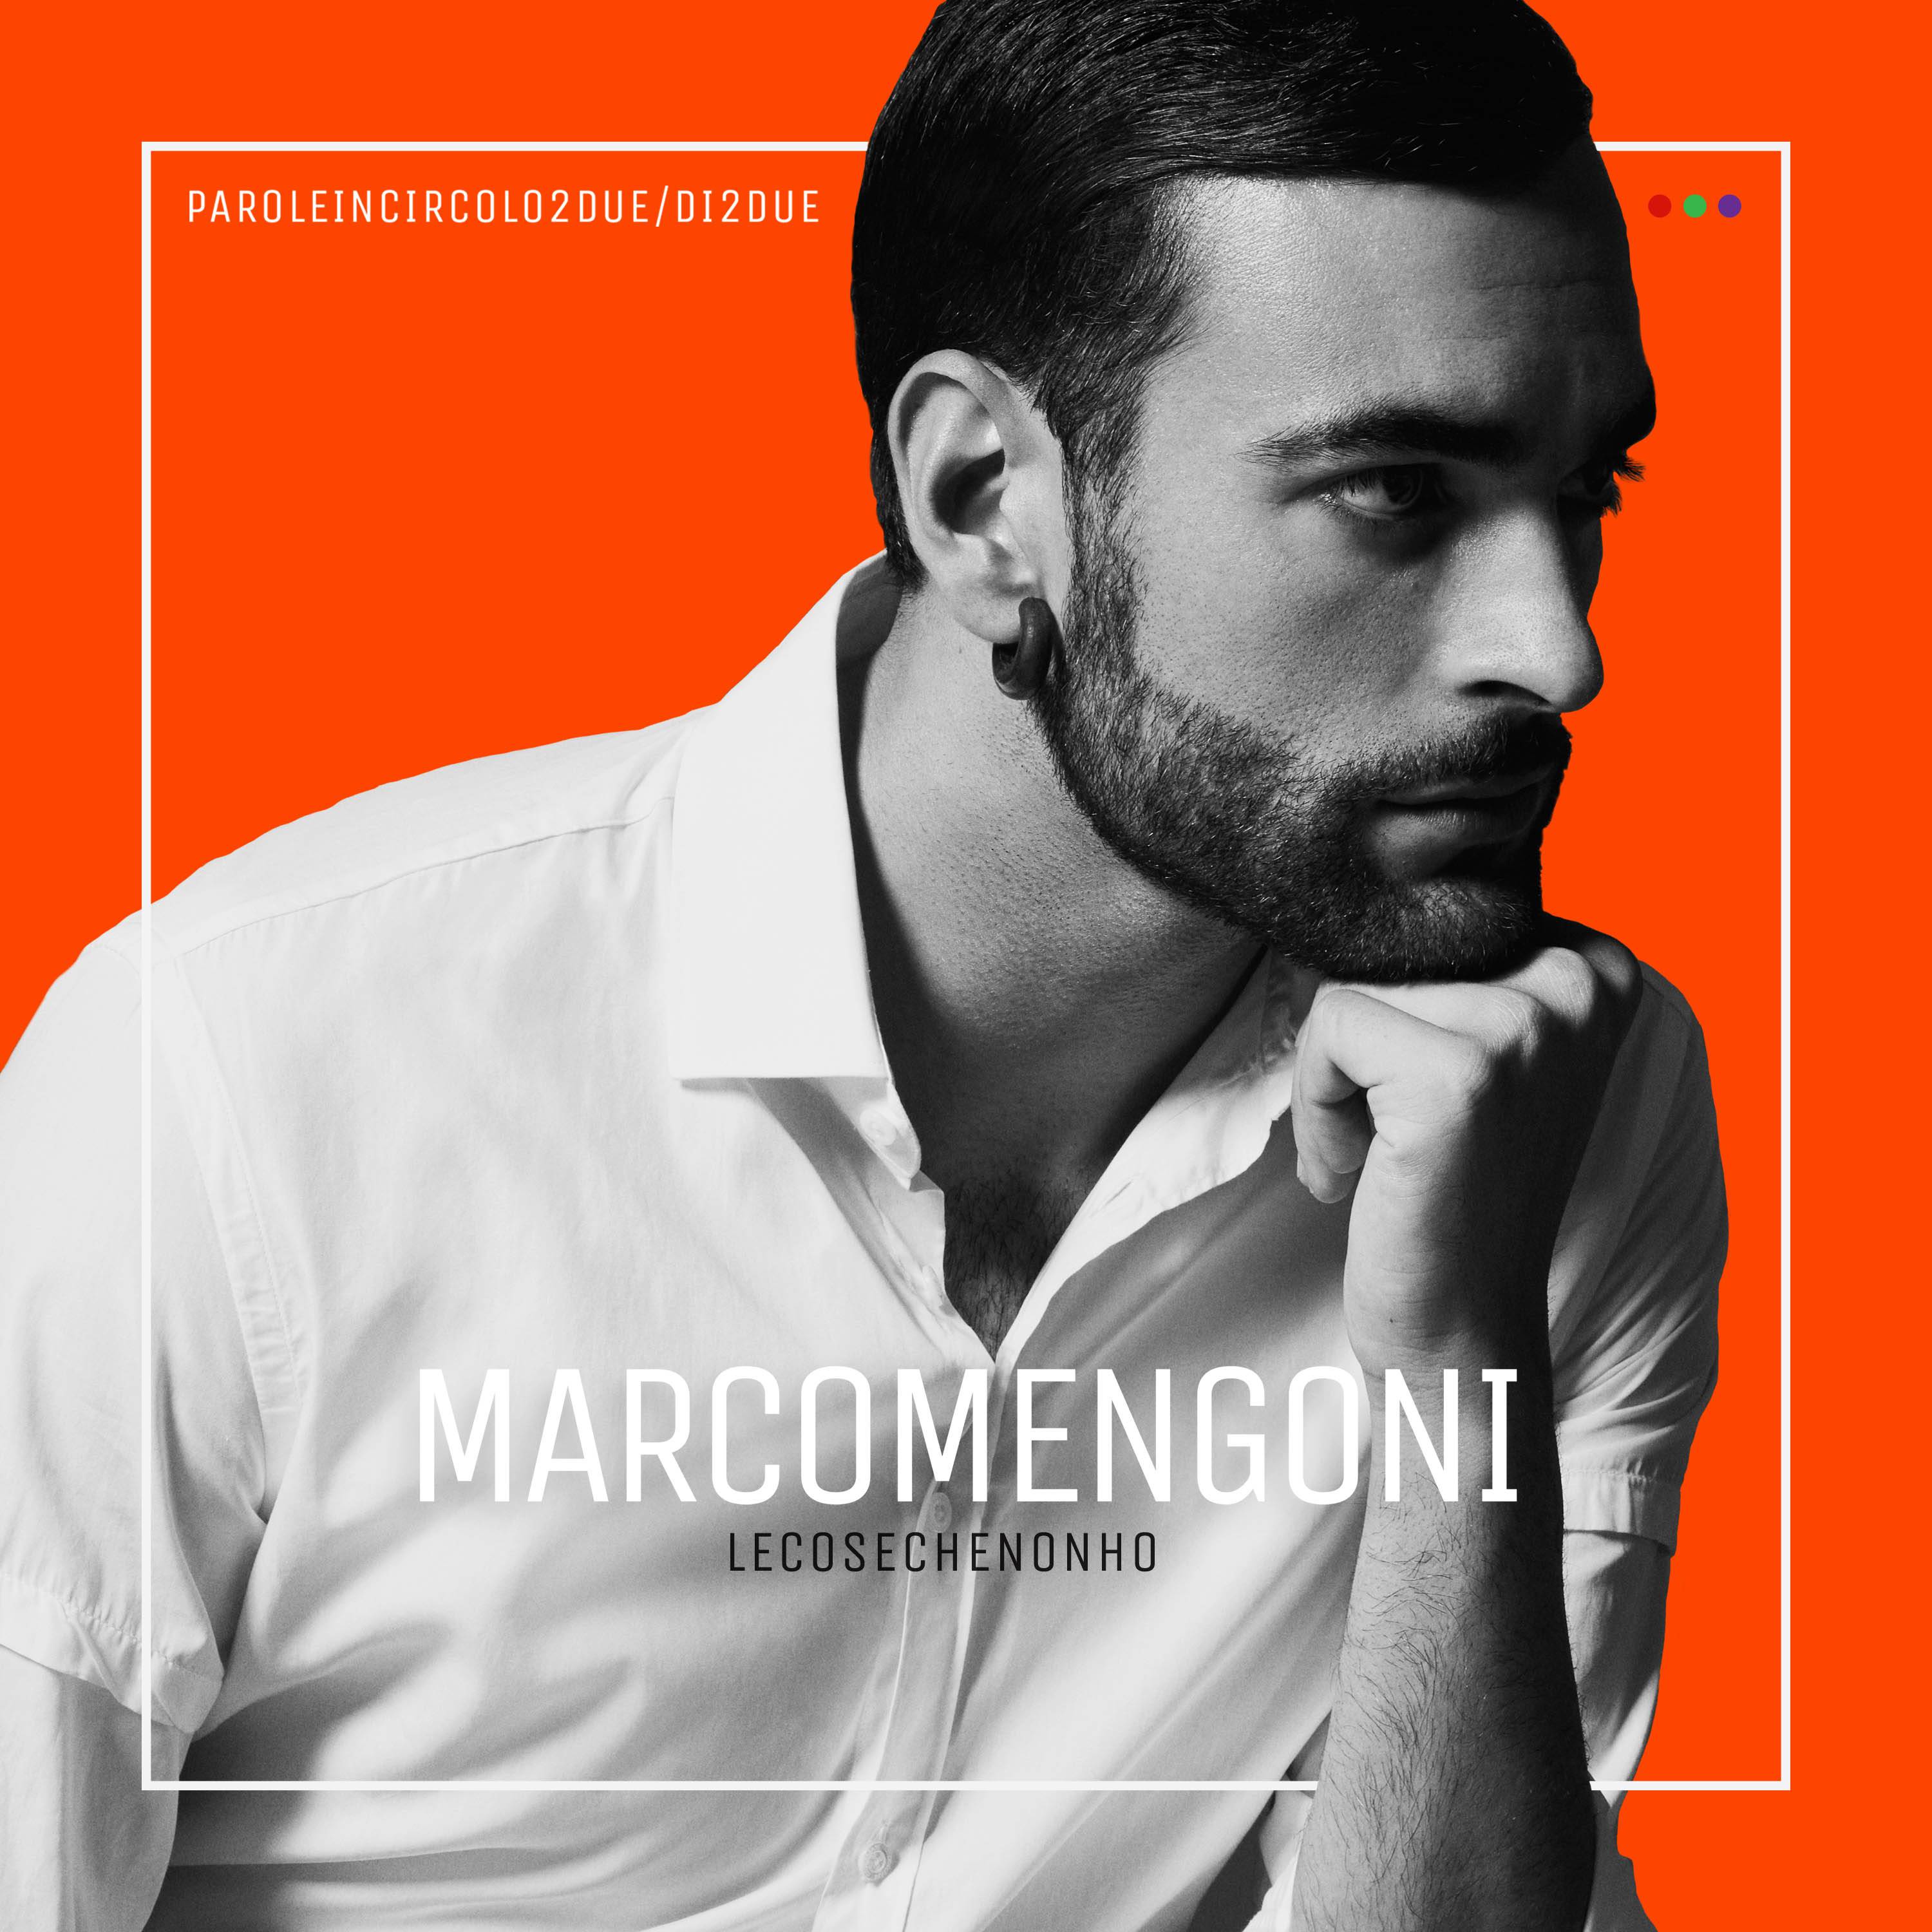 “Le cose che non ho”: il percorso di Marco Mengoni